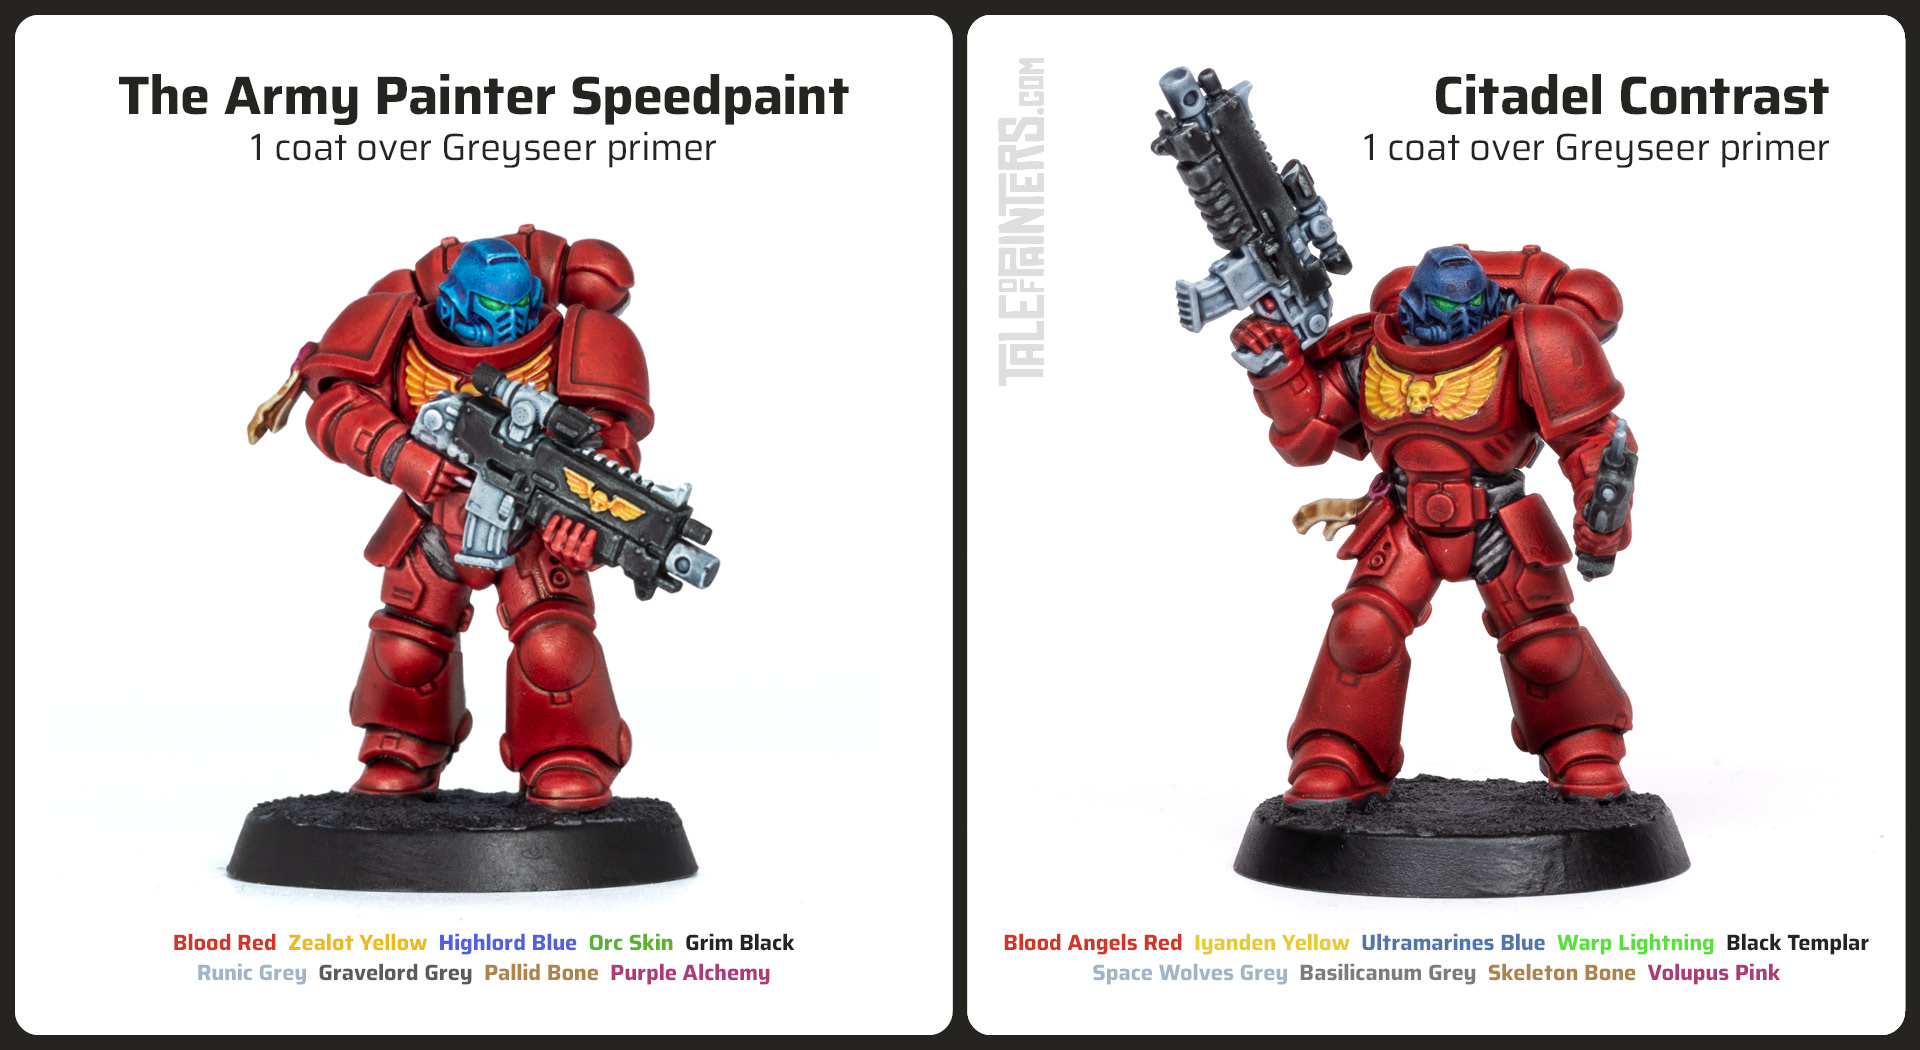 Comparison between Speedpaint and Citadel Contrast, front view